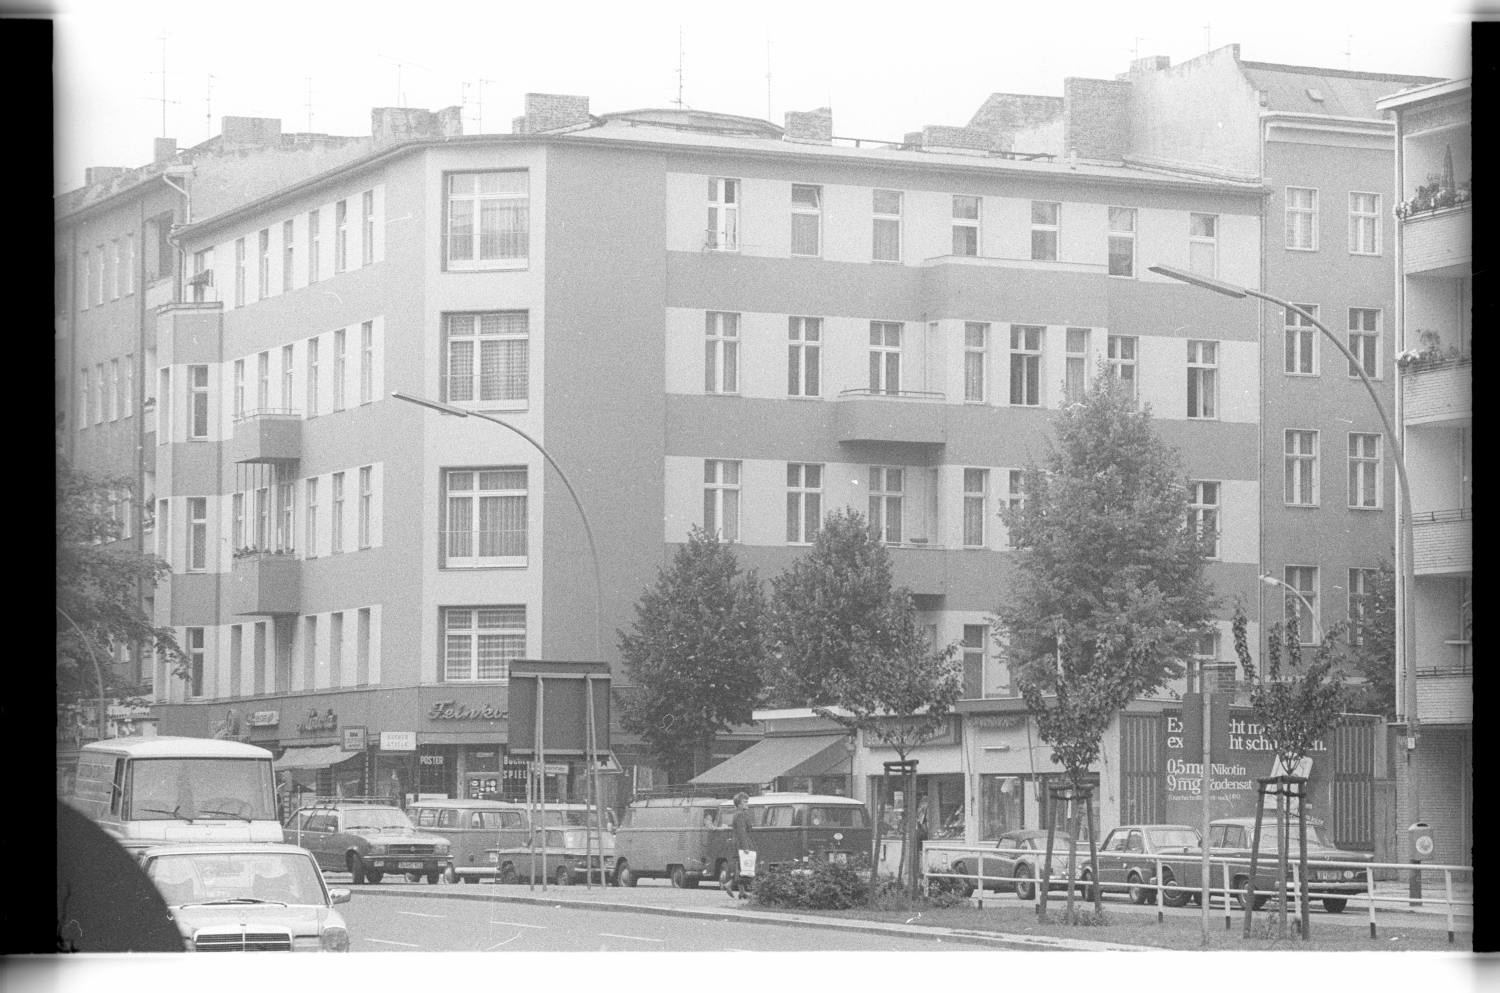 Kleinbildnegative: Maaßenstraße Ecke Nollendorfstraße, 1978 (Museen Tempelhof-Schöneberg/Jürgen Henschel RR-F)